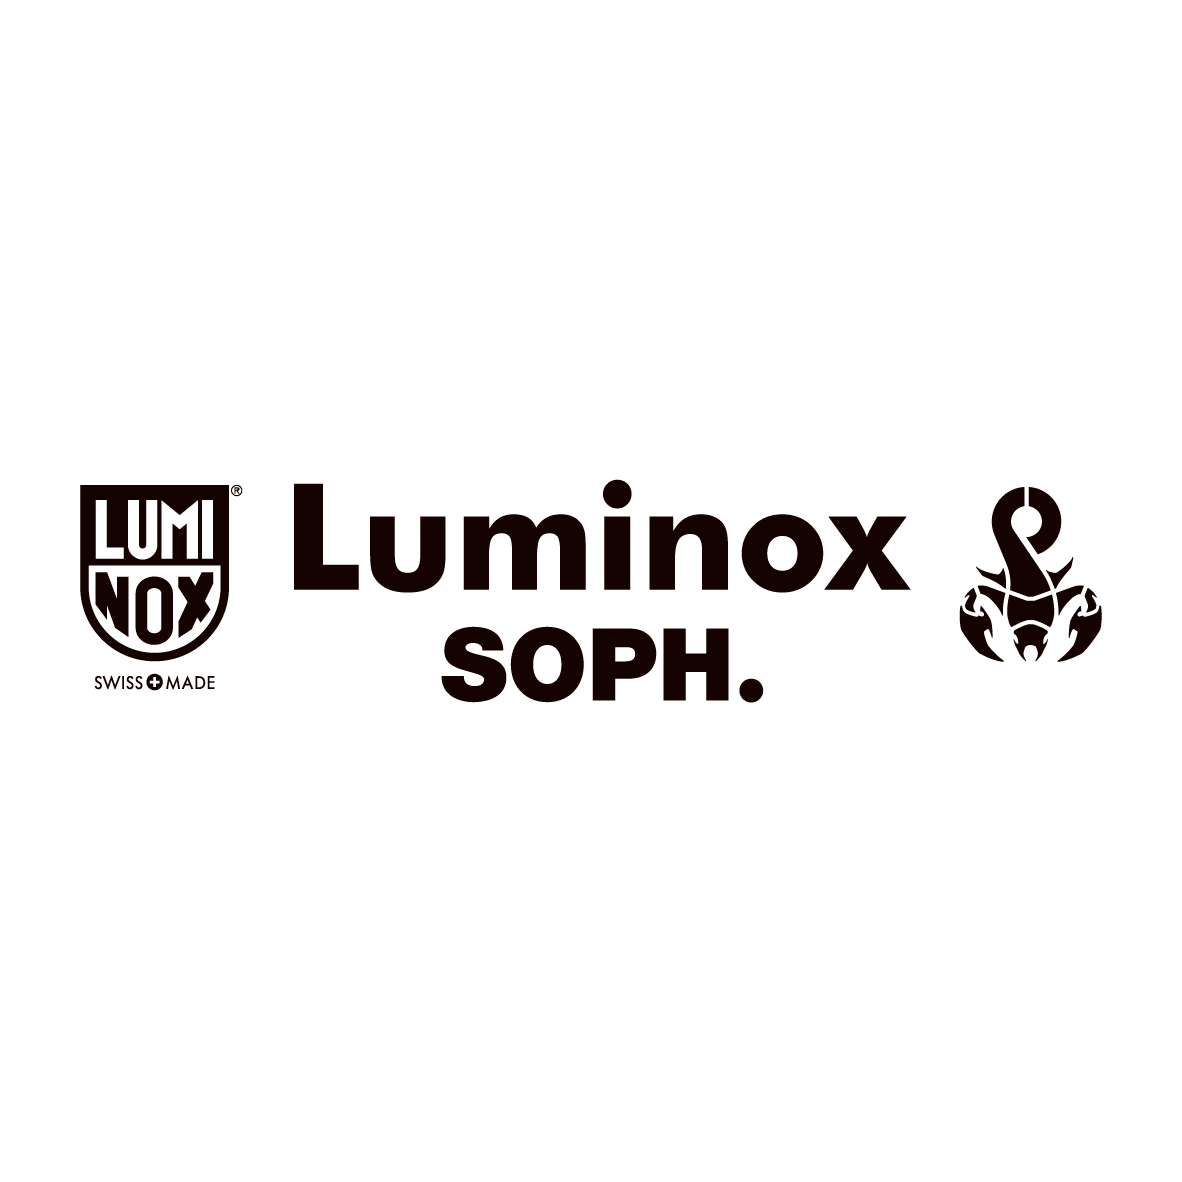 【未使用】Luminox 3001 SOPH. シリアル1桁  sophnet